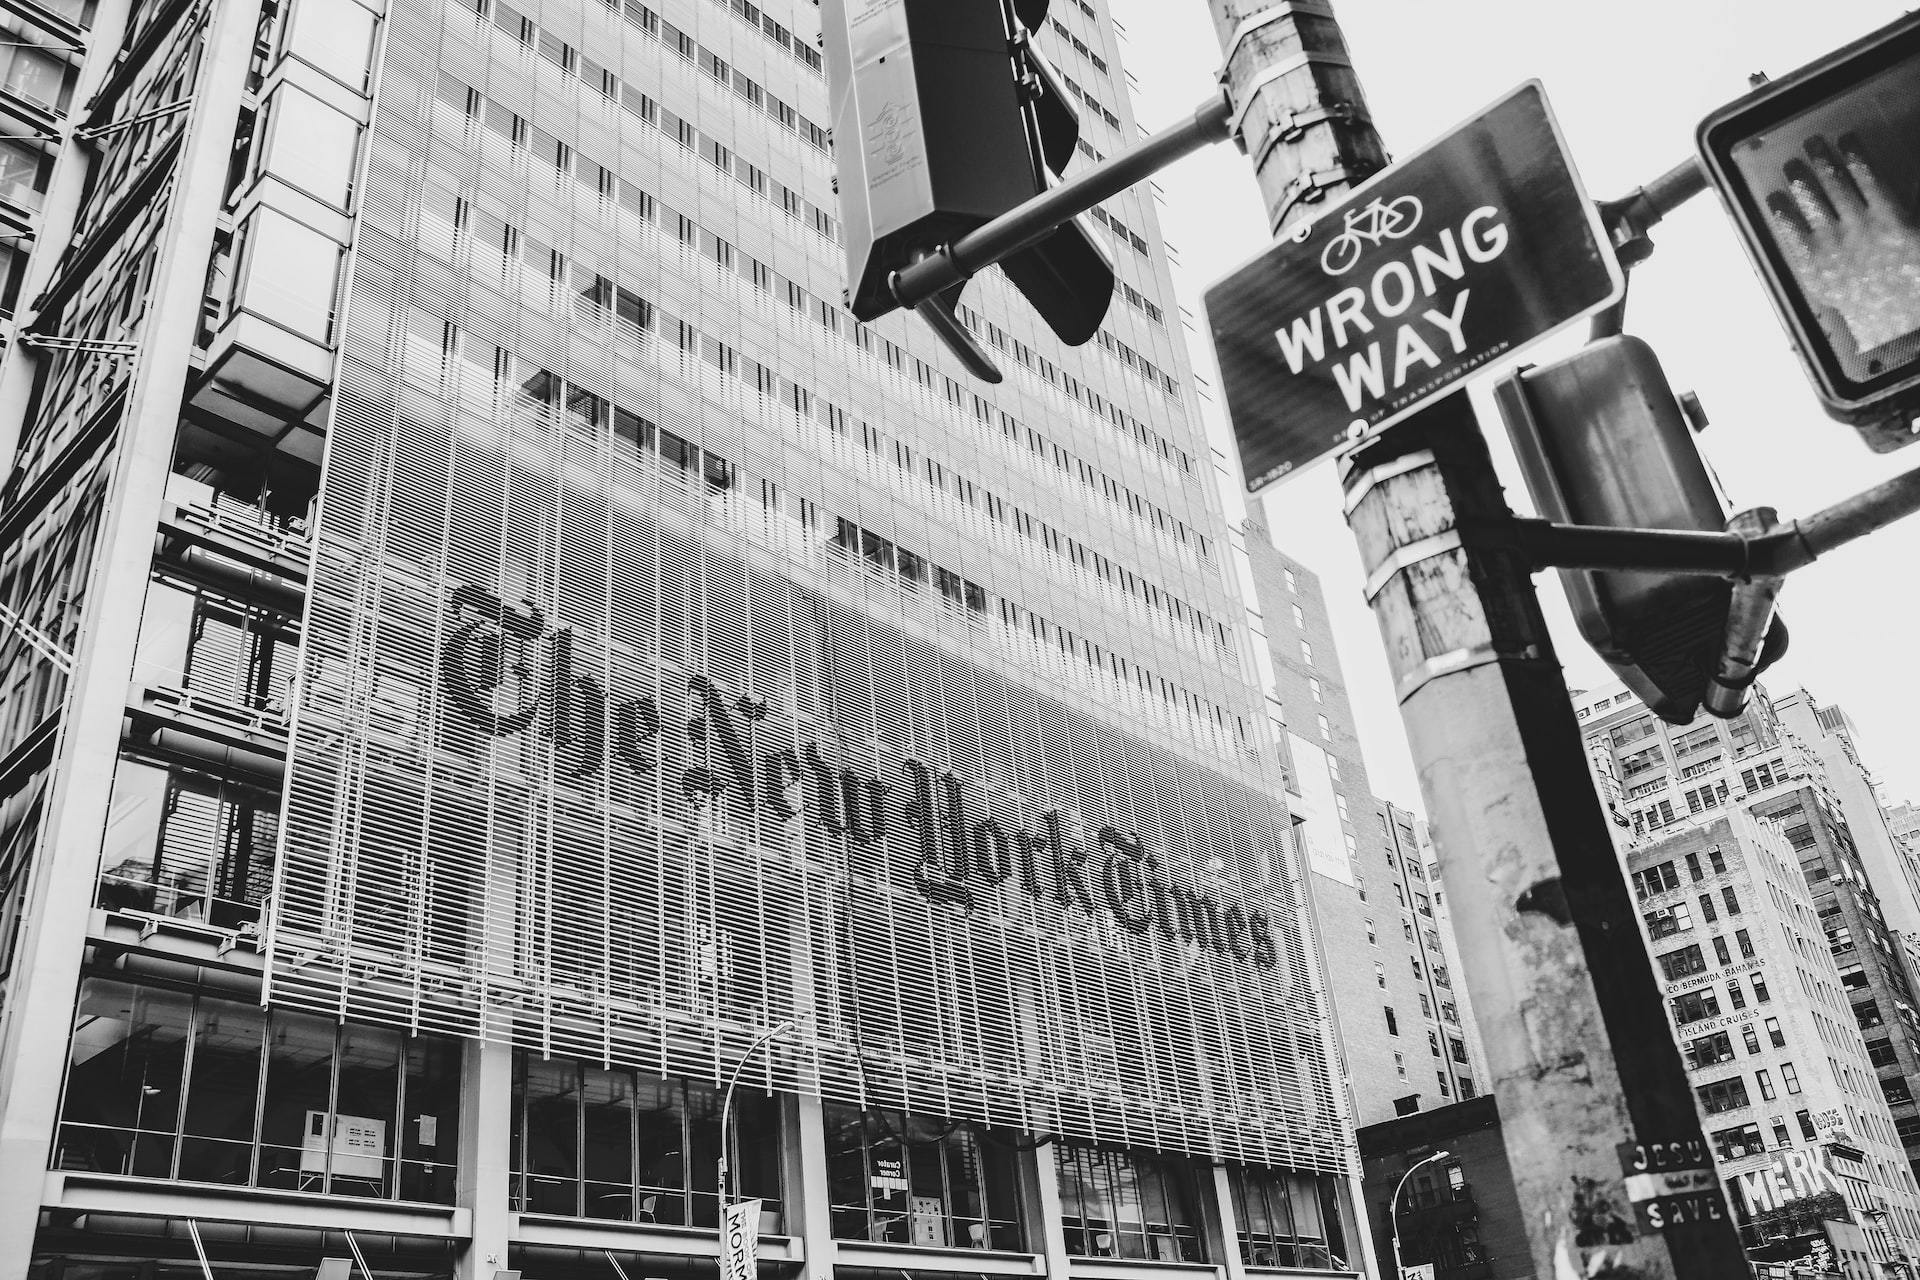 New York Times Bestseller - NYT Offices - Photo by Jakayla Toney on Unsplash